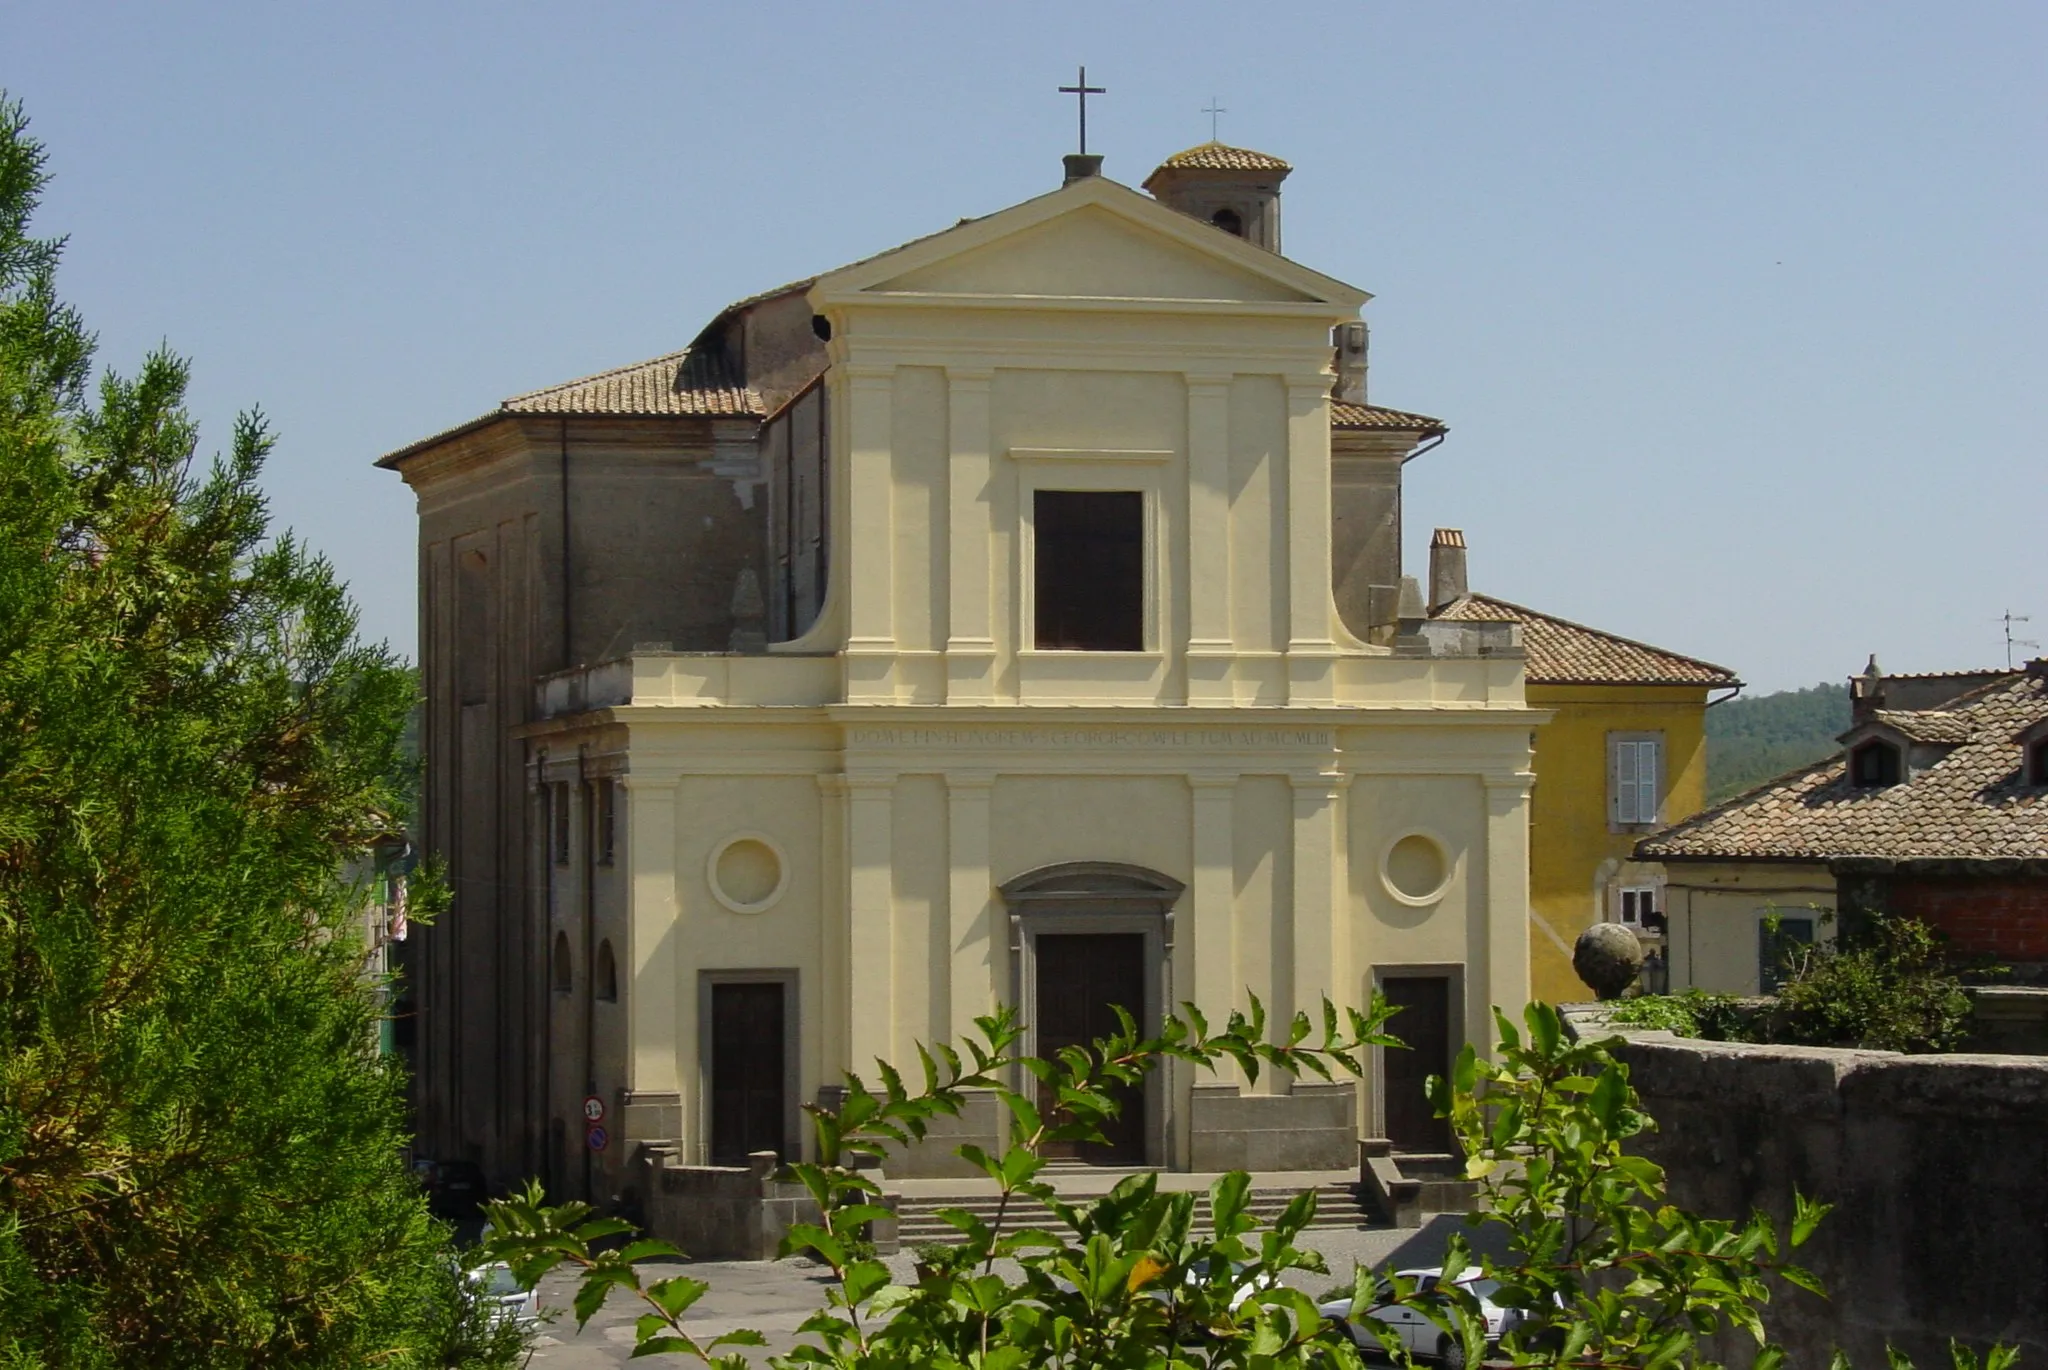 Photo showing: The church "Chiesa Parrocchiale di San Giorgio" in Oriolo Romano, Provincia di Viterbo, Italy